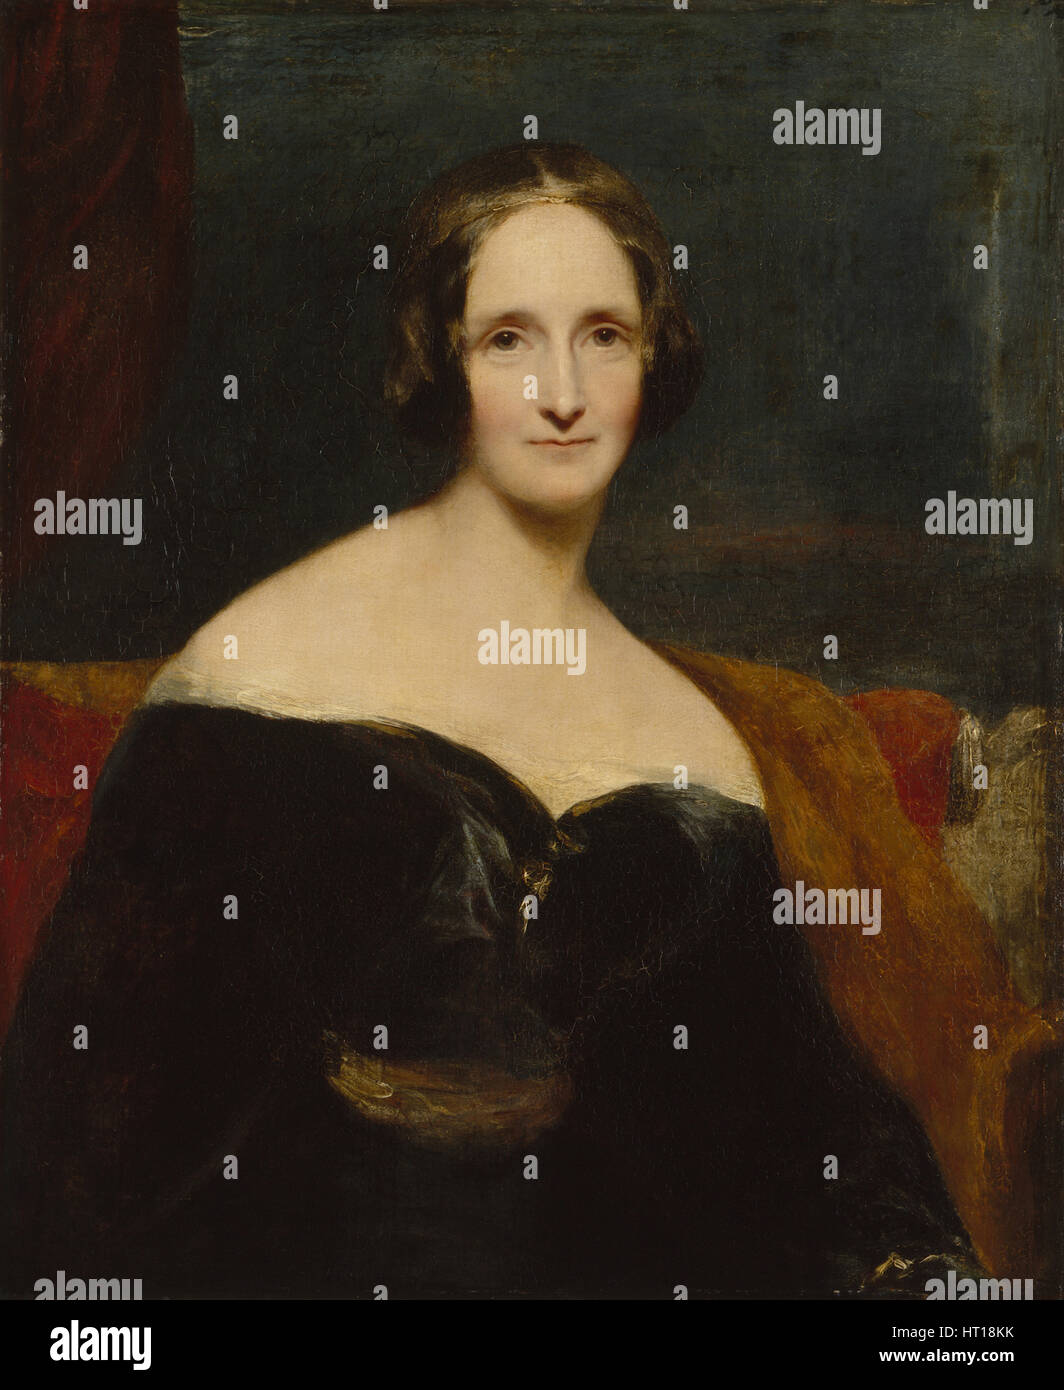 Mary Shelley, 1840. Artista: Rothwell, Richard (1800-1868) Foto Stock